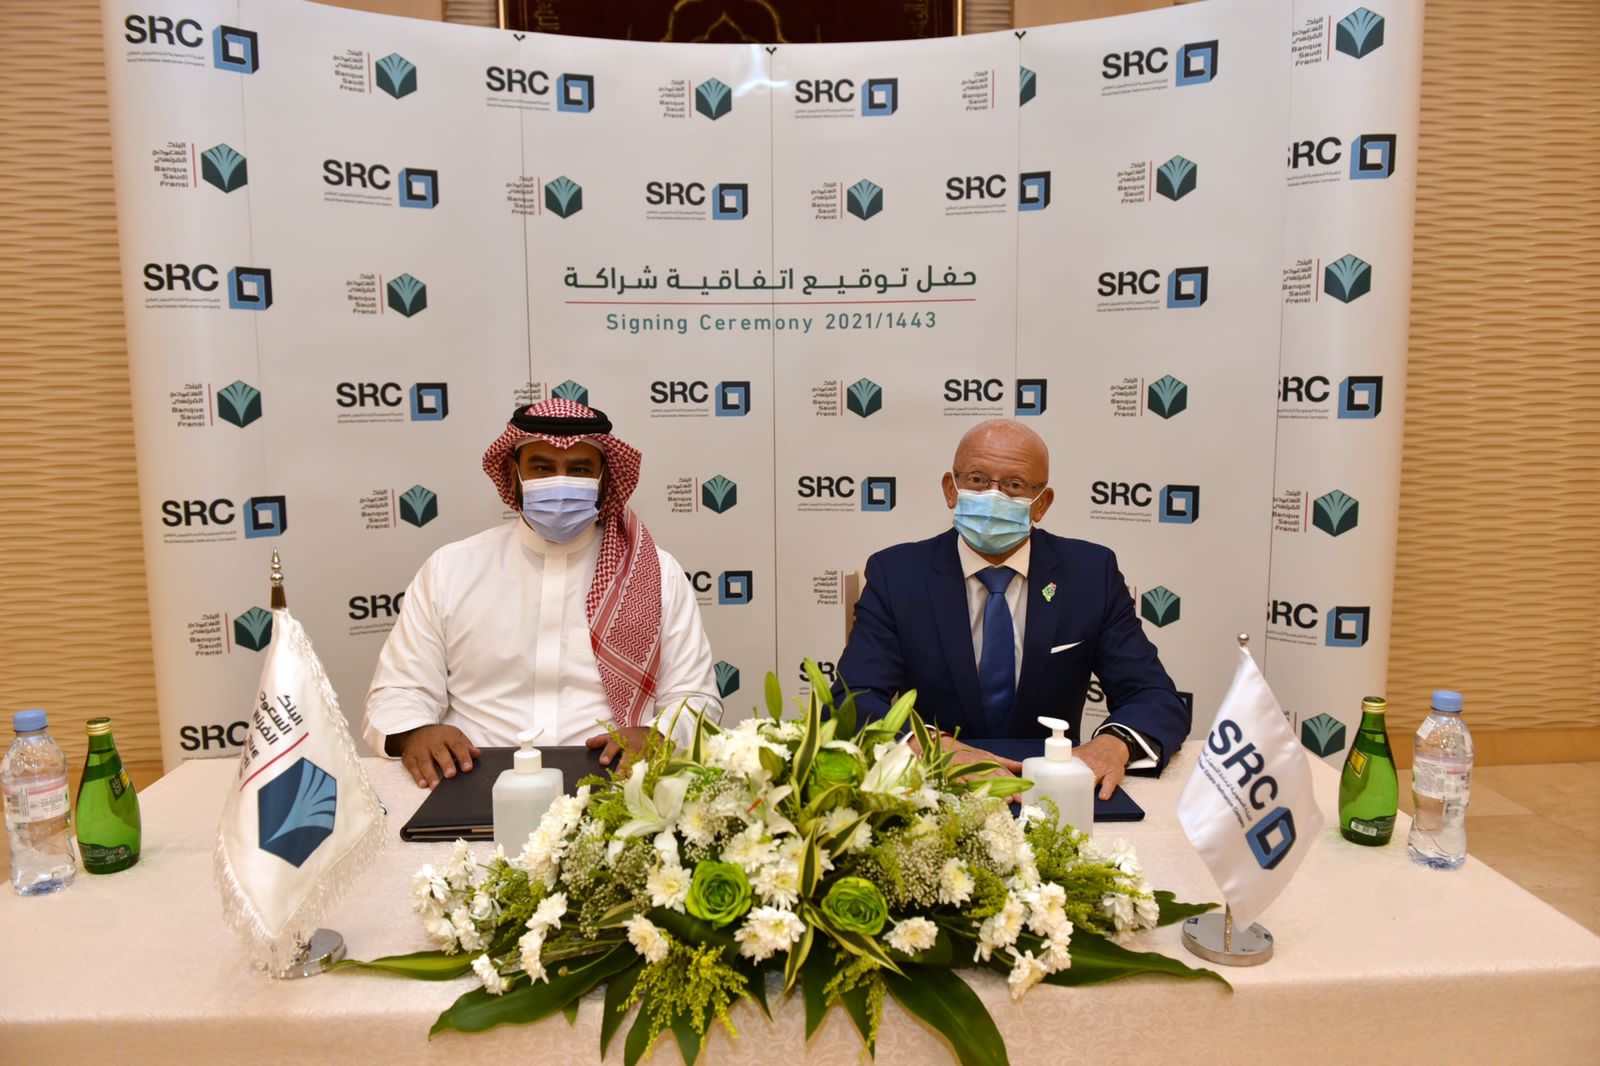 السعودية لإعادة التمويل”(SRC) و”البنك الفرنسي” يوقعان اتفاقية